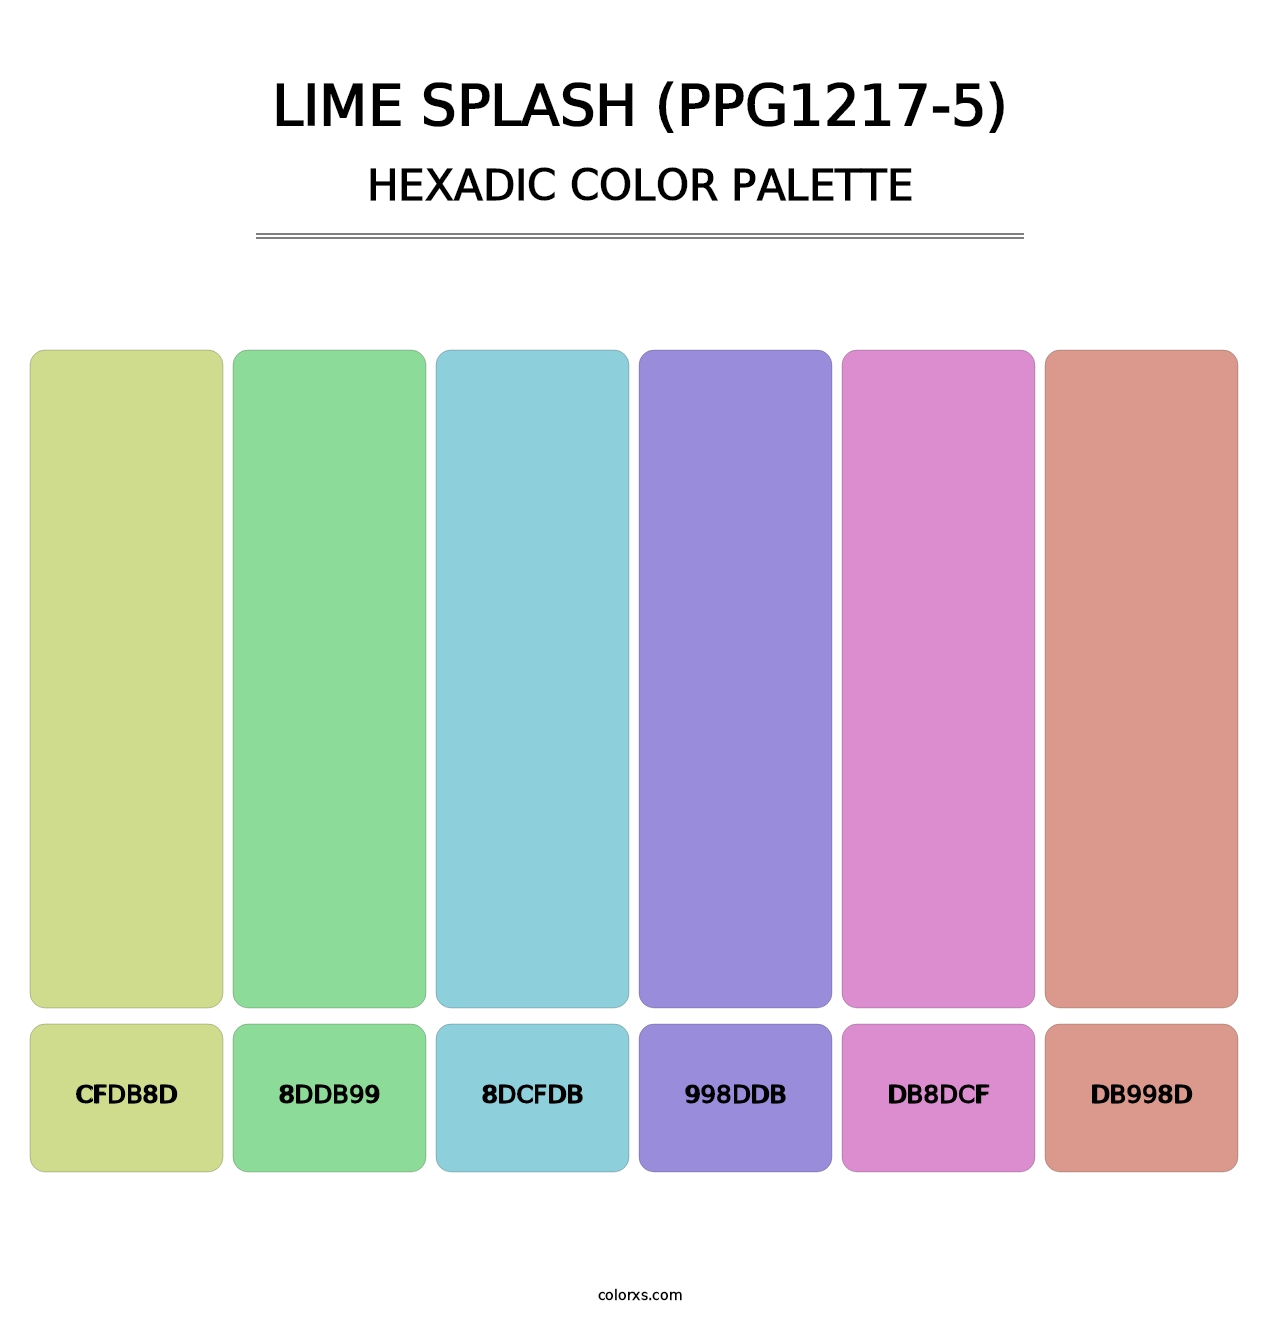 Lime Splash (PPG1217-5) - Hexadic Color Palette